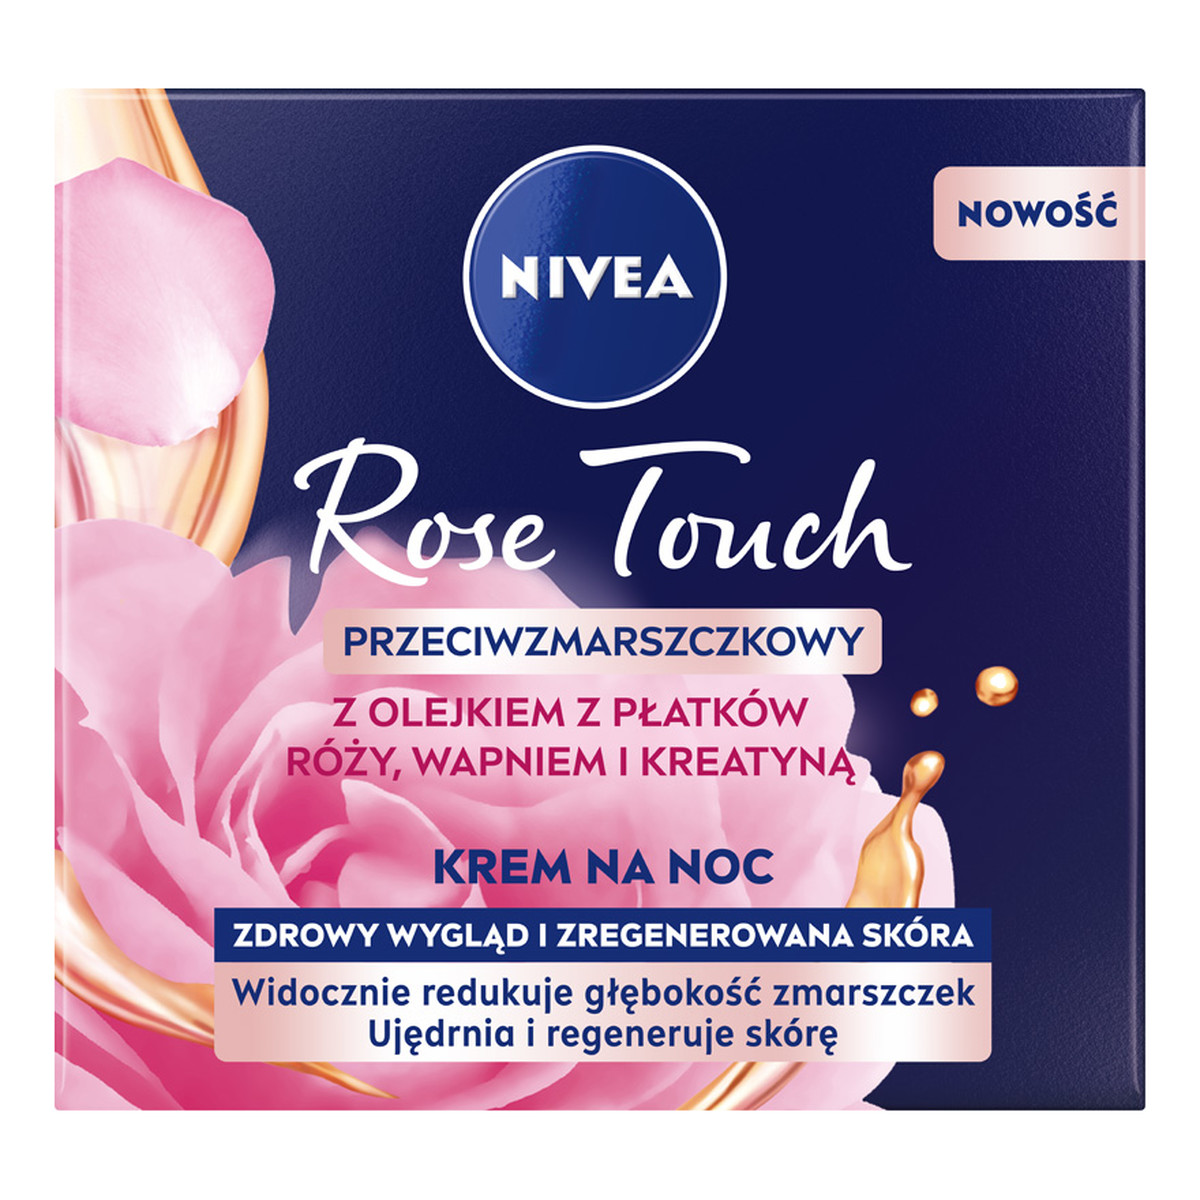 Nivea Rose Touch przeciwzmarszczkowy Krem na noc z olejkiem z płatków róży wapniem i kreatyną 50ml